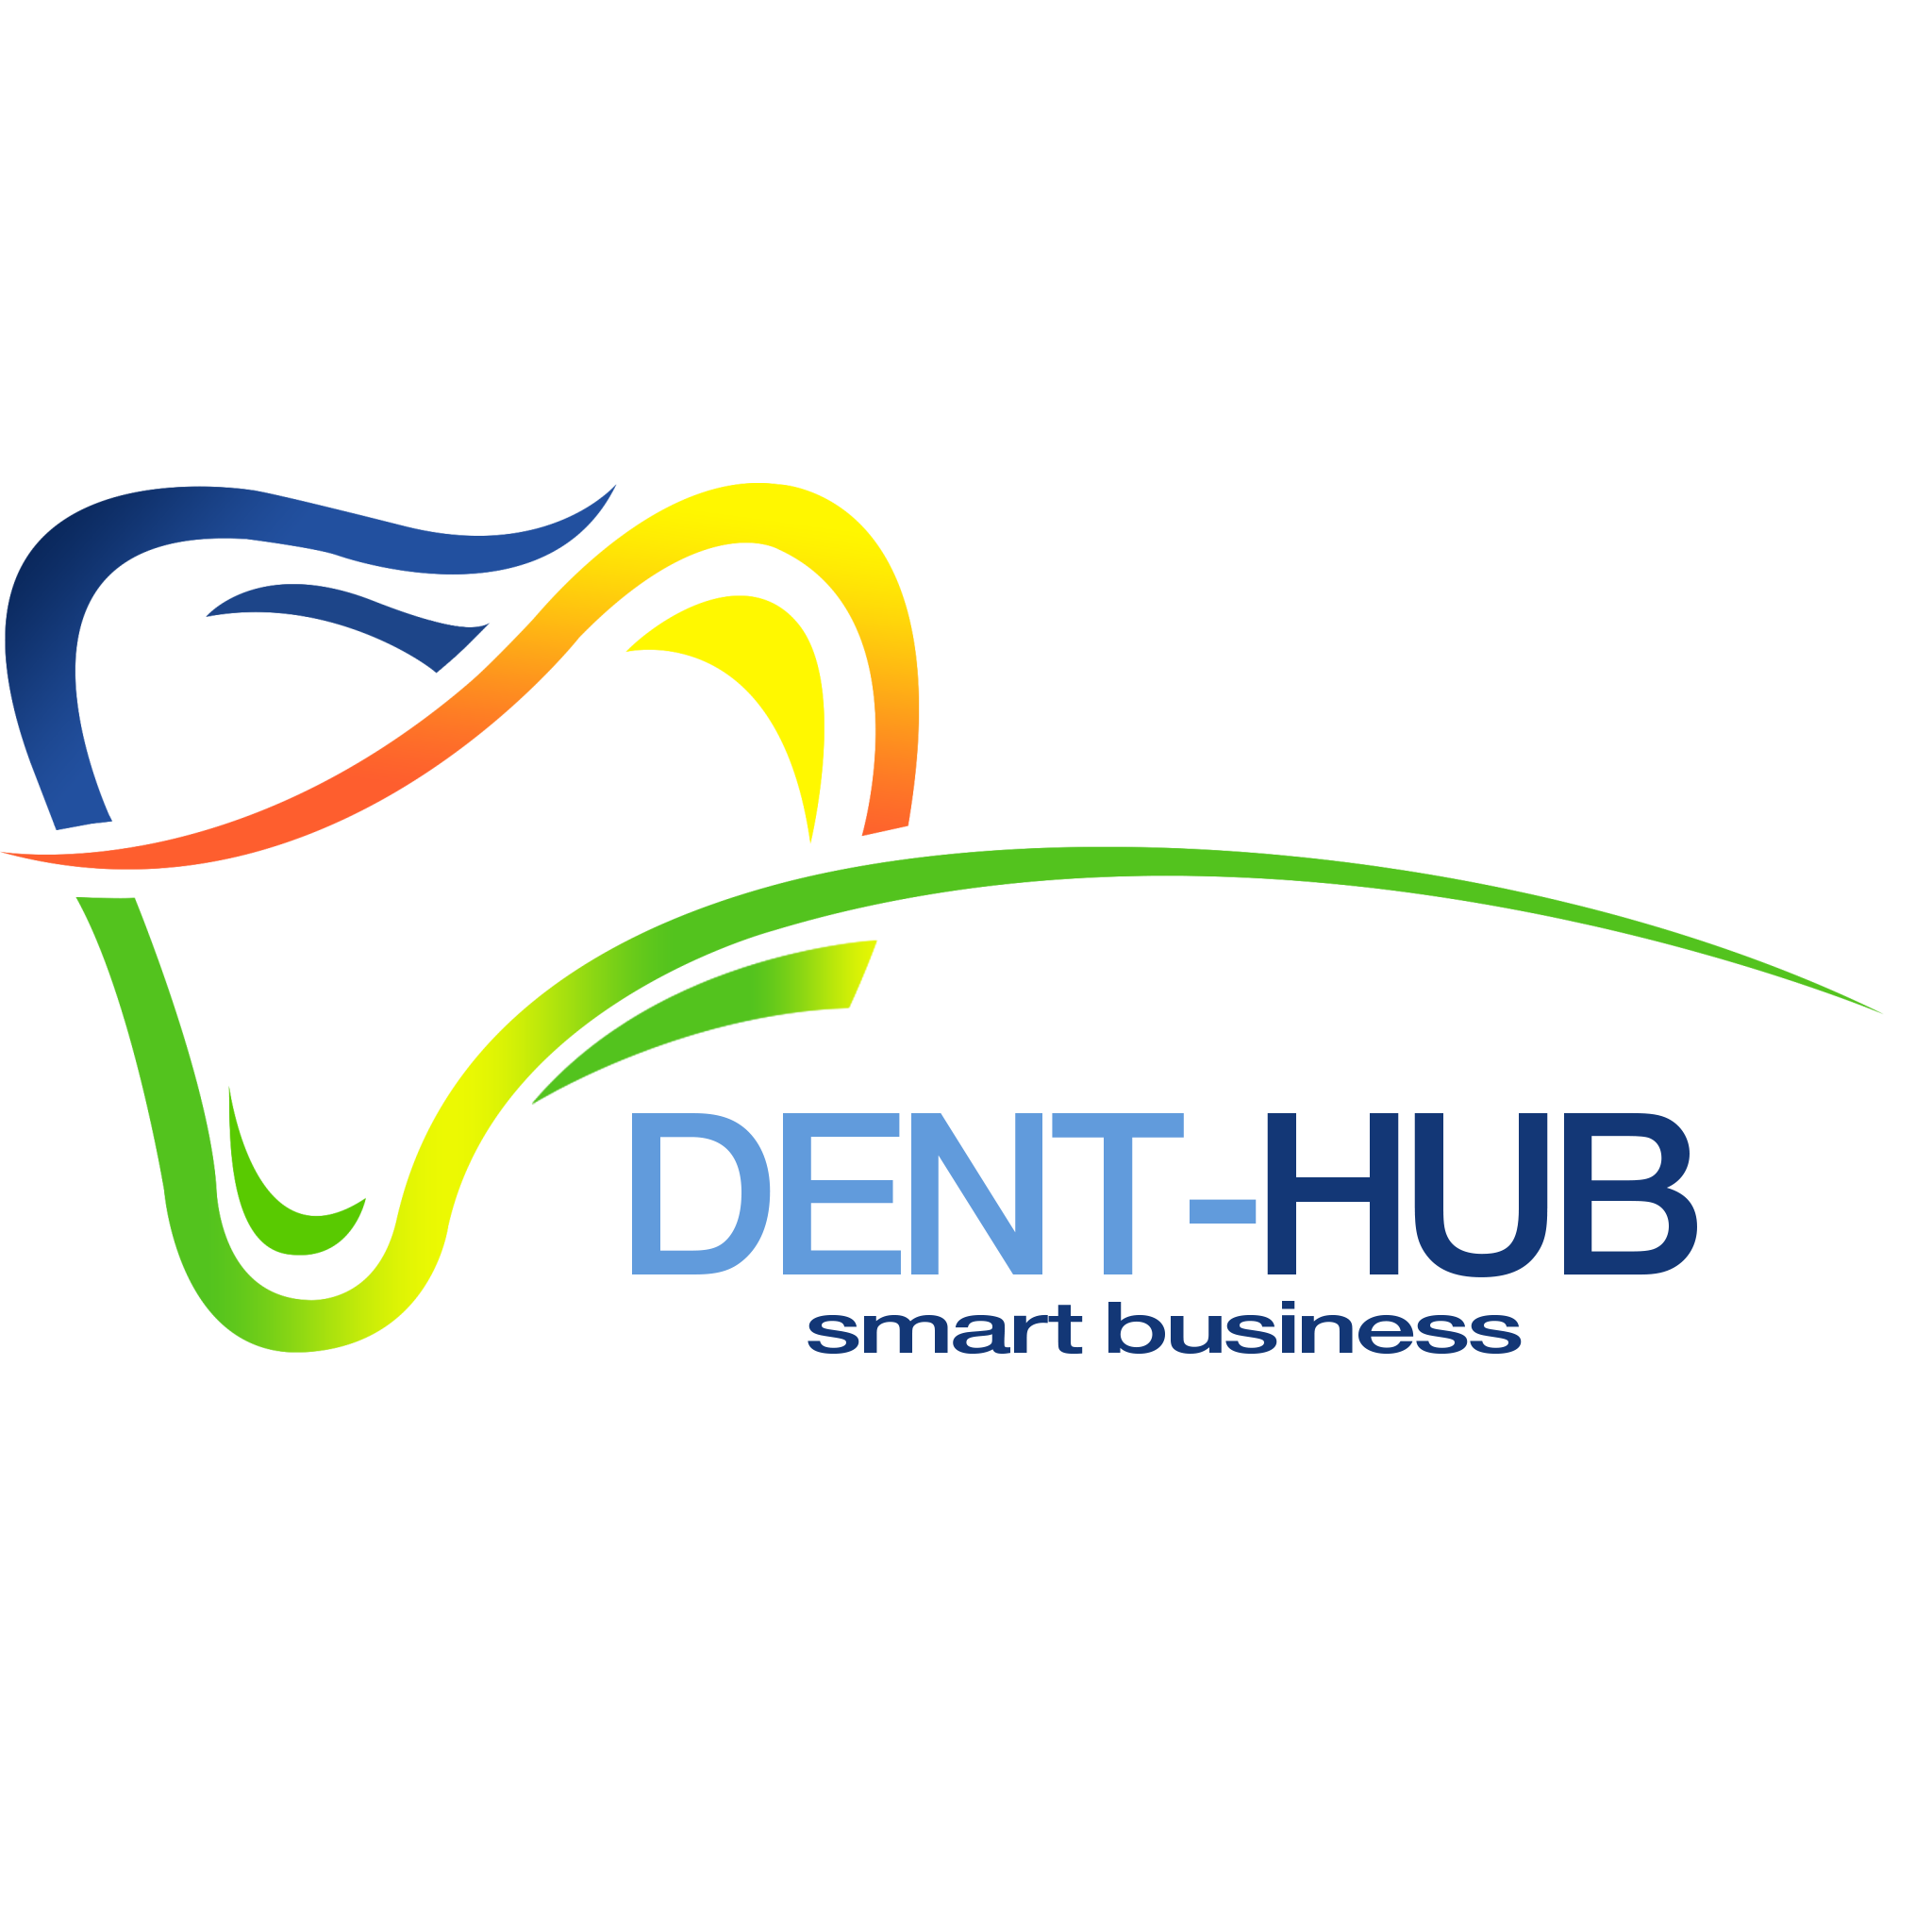 Dent-Hub